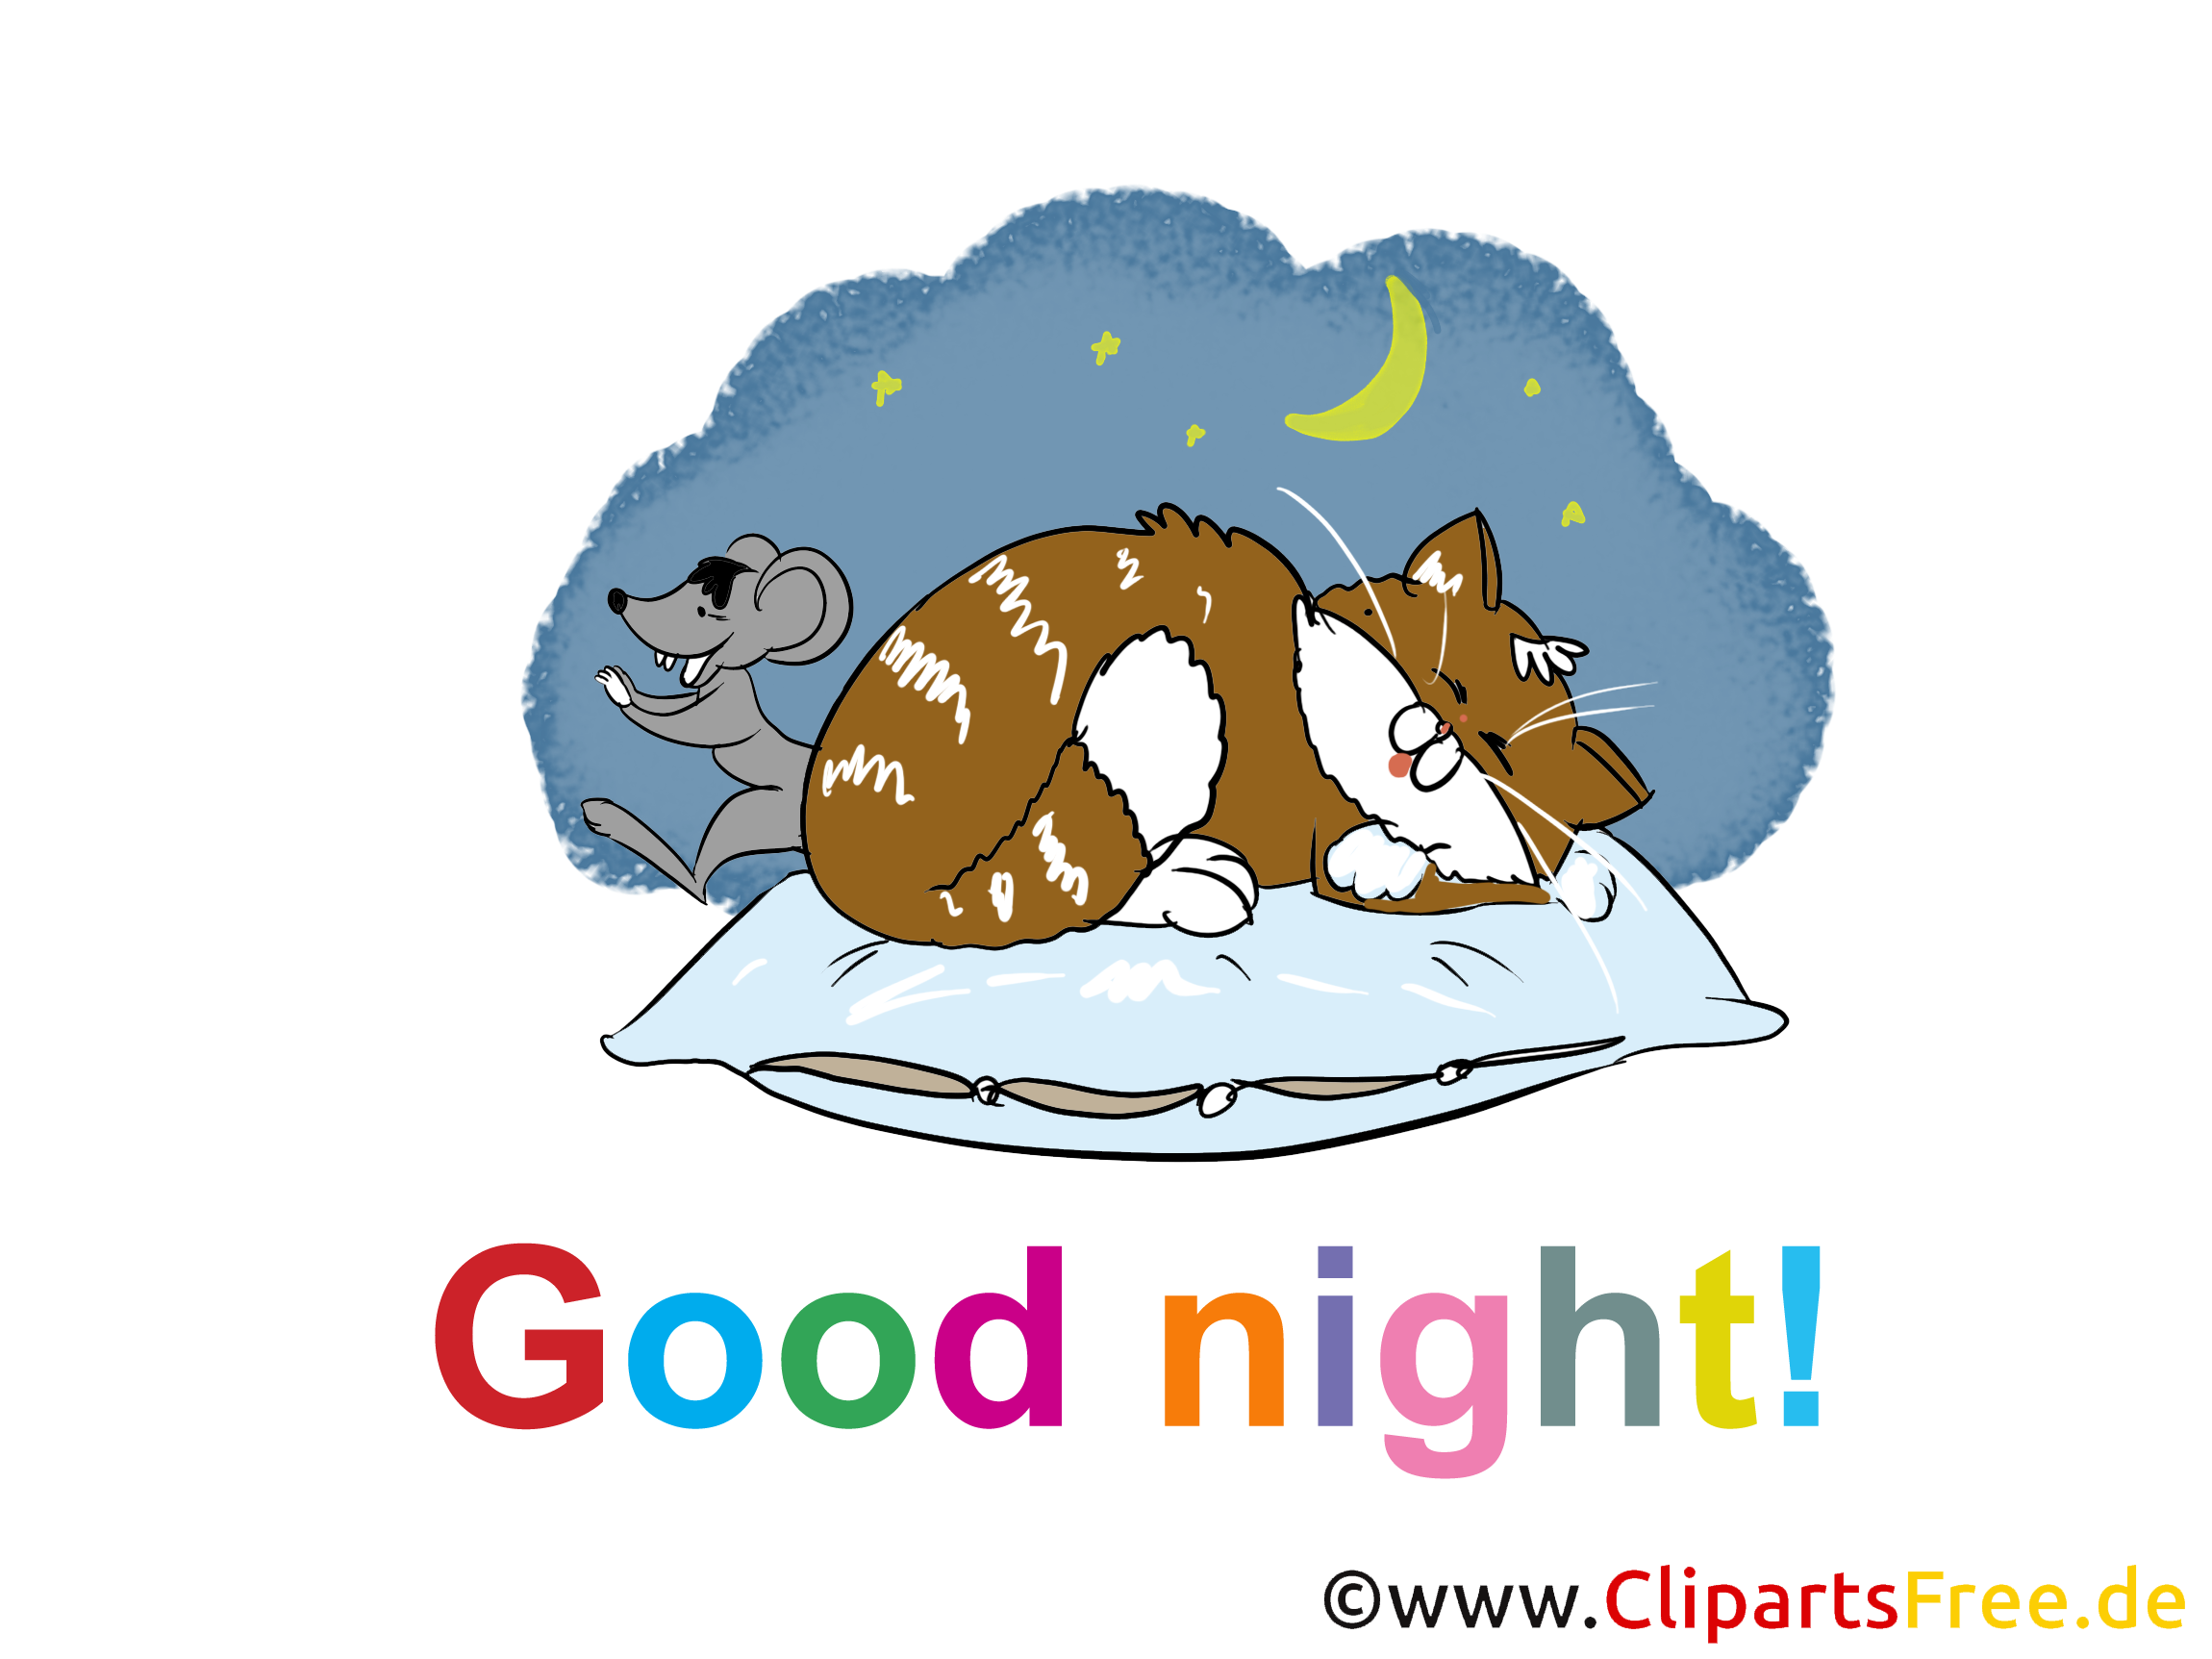 Clip art chat – Bonne nuit gratuite